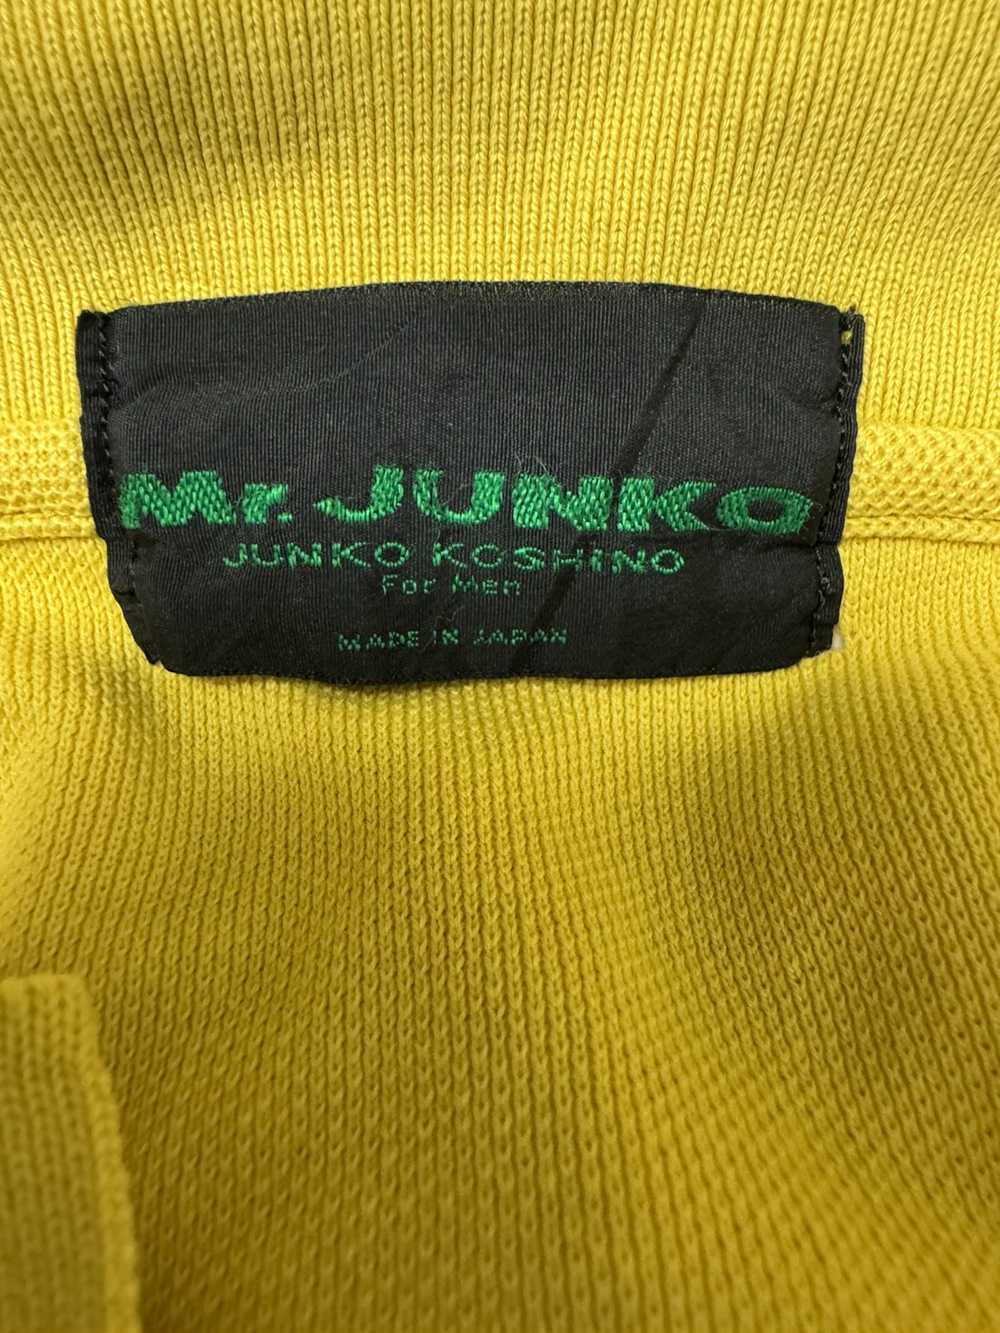 Mr. Junko MR JUNKO POLO SHIRT - image 4